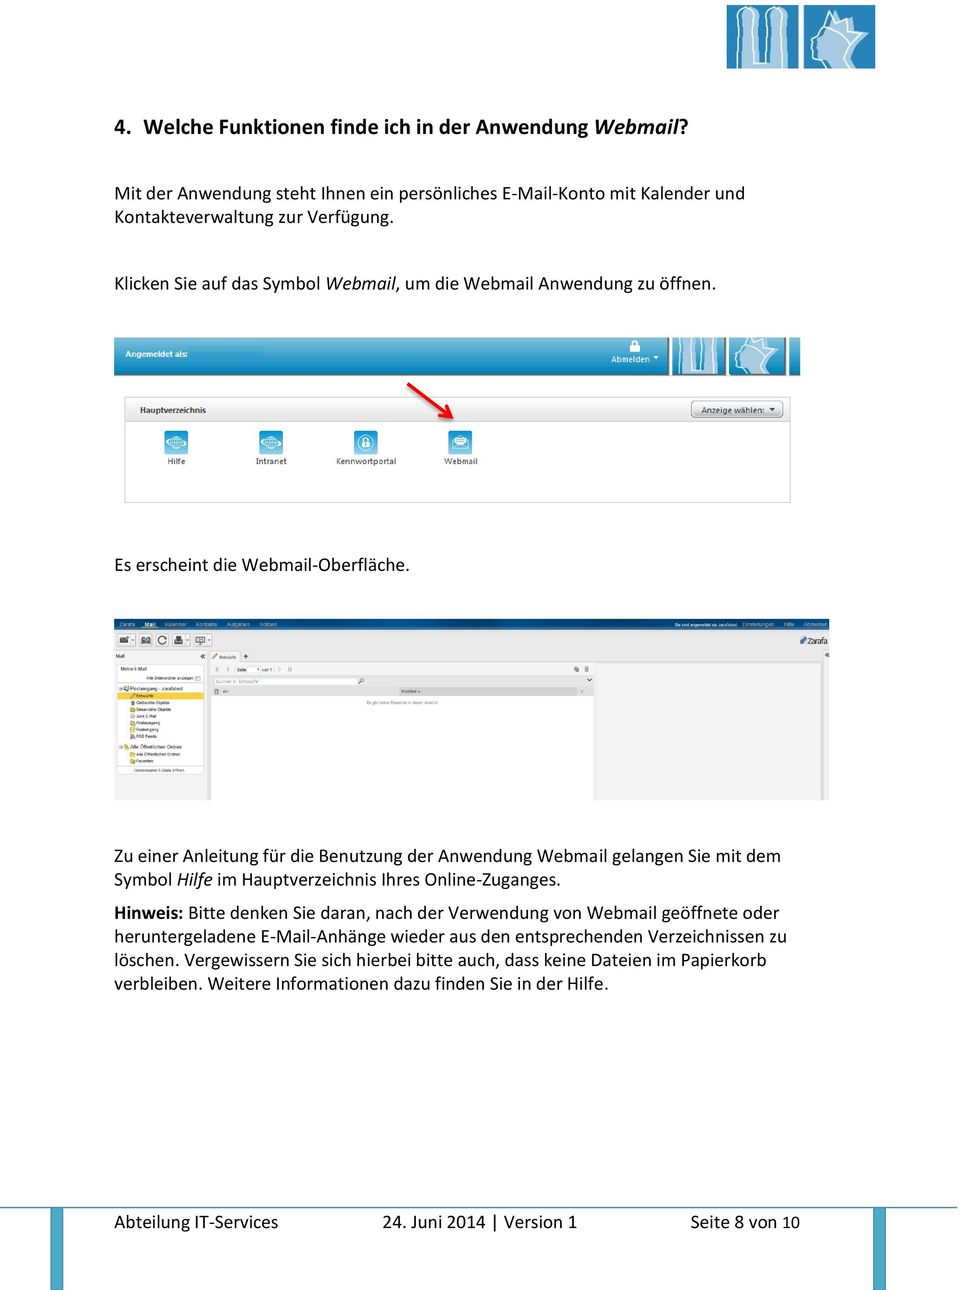 Zu einer Anleitung für die Benutzung der Anwendung Webmail gelangen Sie mit dem Symbol Hilfe im Hauptverzeichnis Ihres Online-Zuganges.